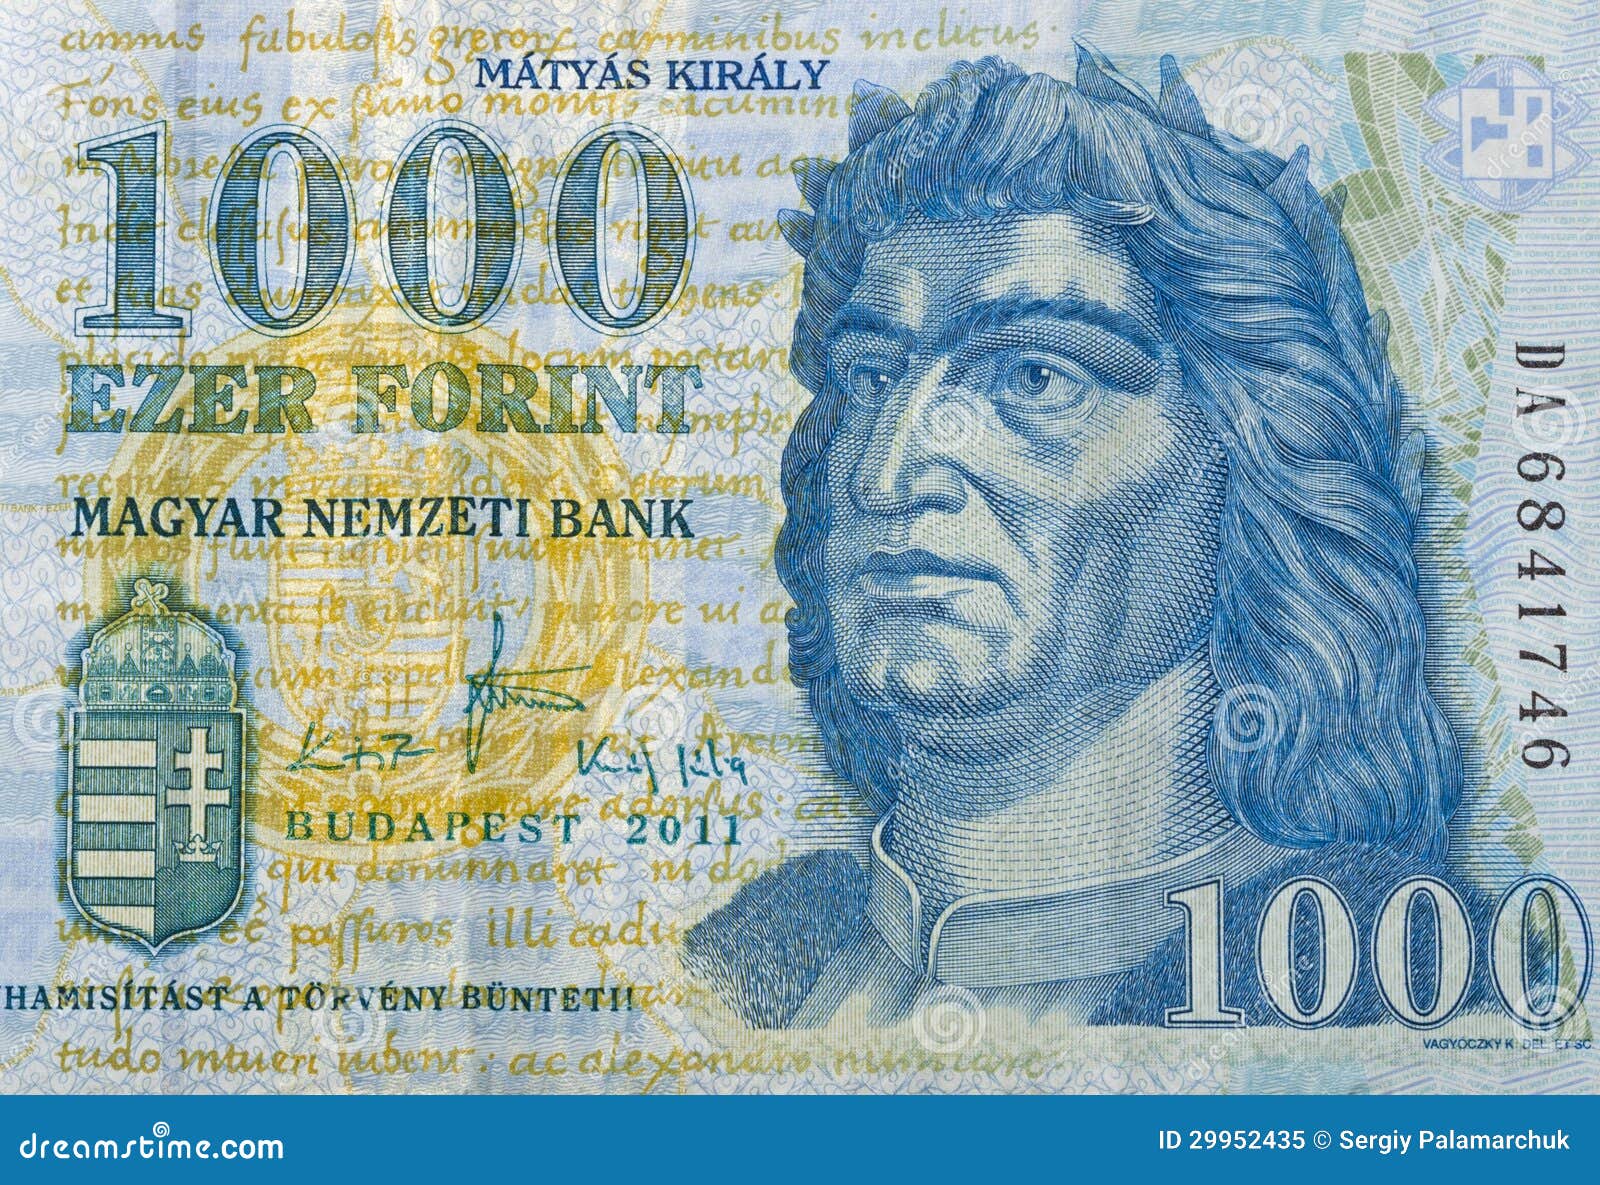 1000 Huf In Euro